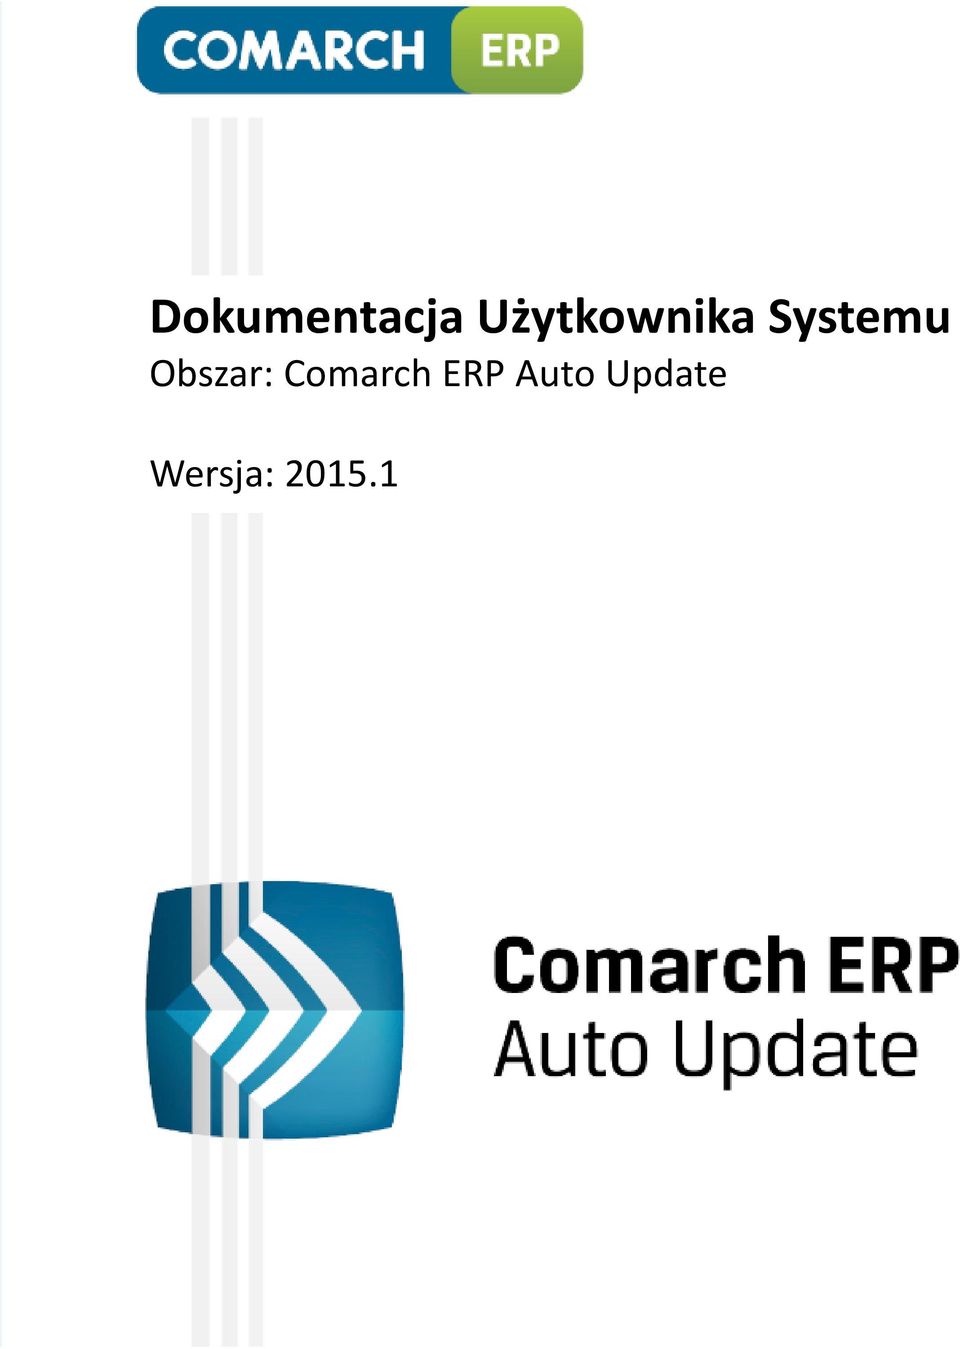 Obszar: Comarch ERP